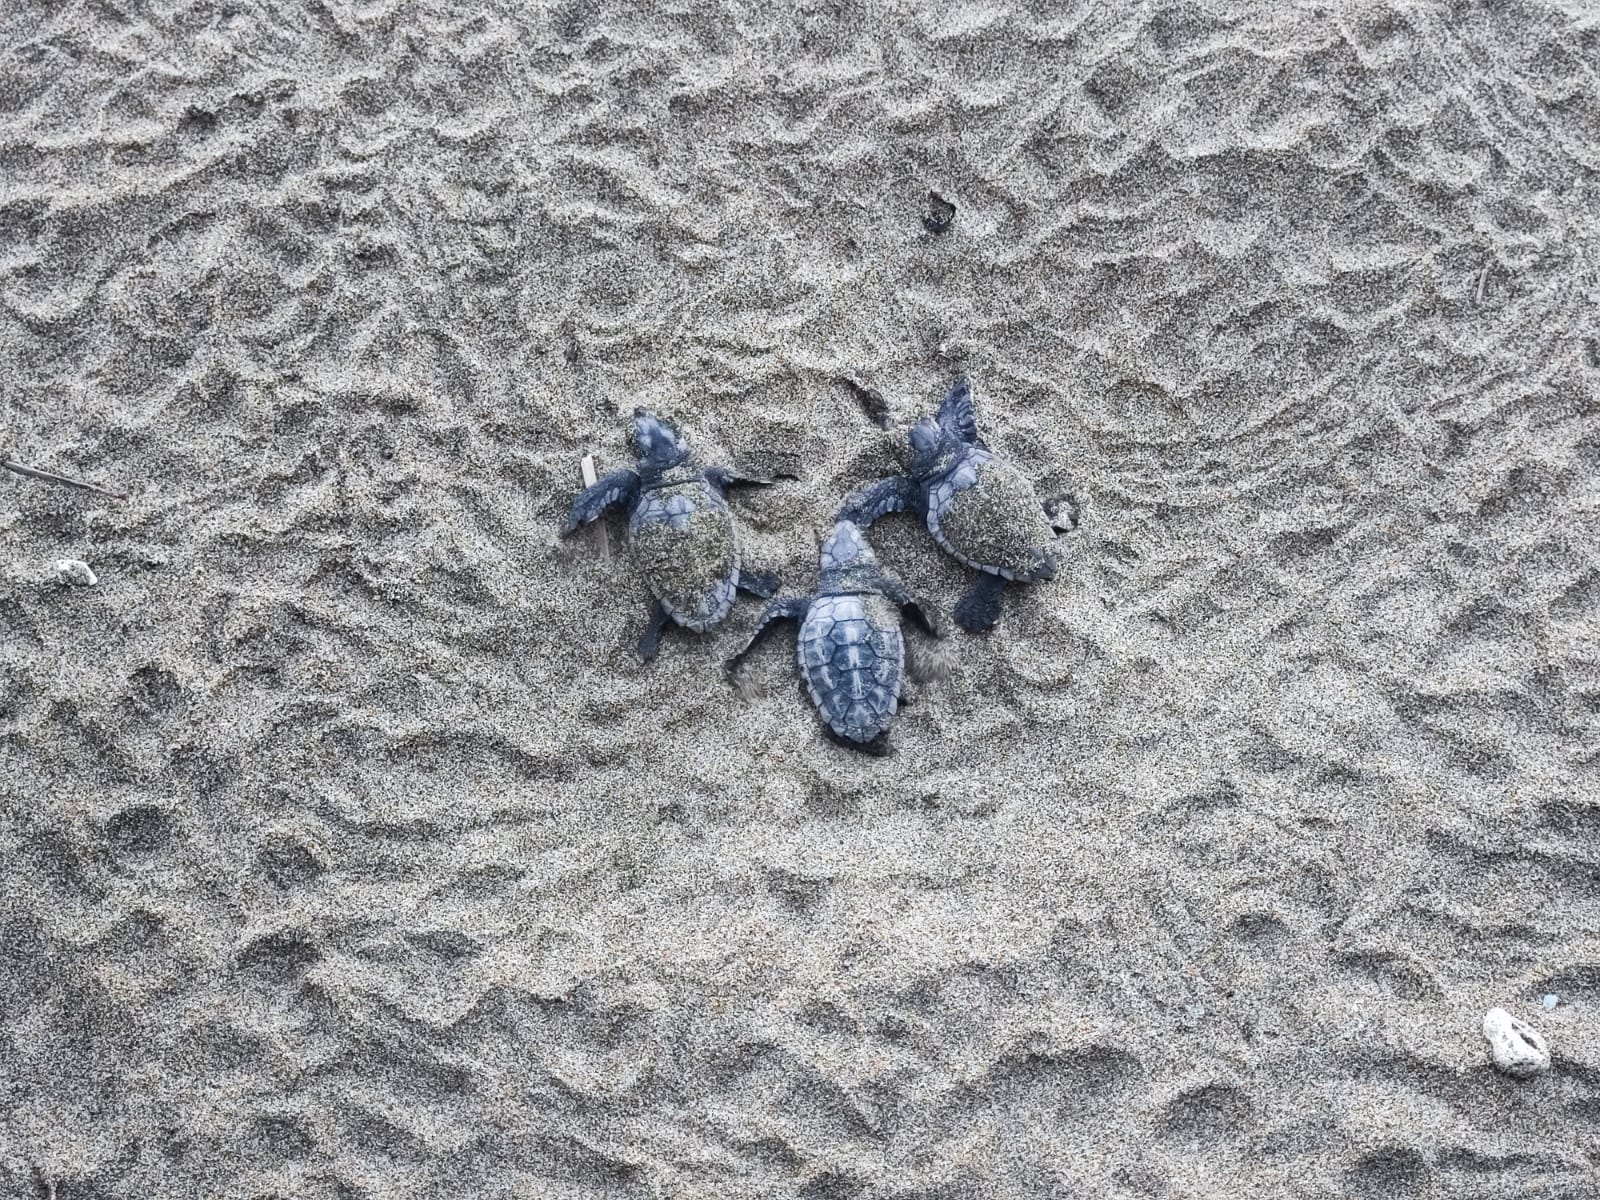 Spettacolo ad Acciaroli, 70 piccole tartarughe raggiungono il mare